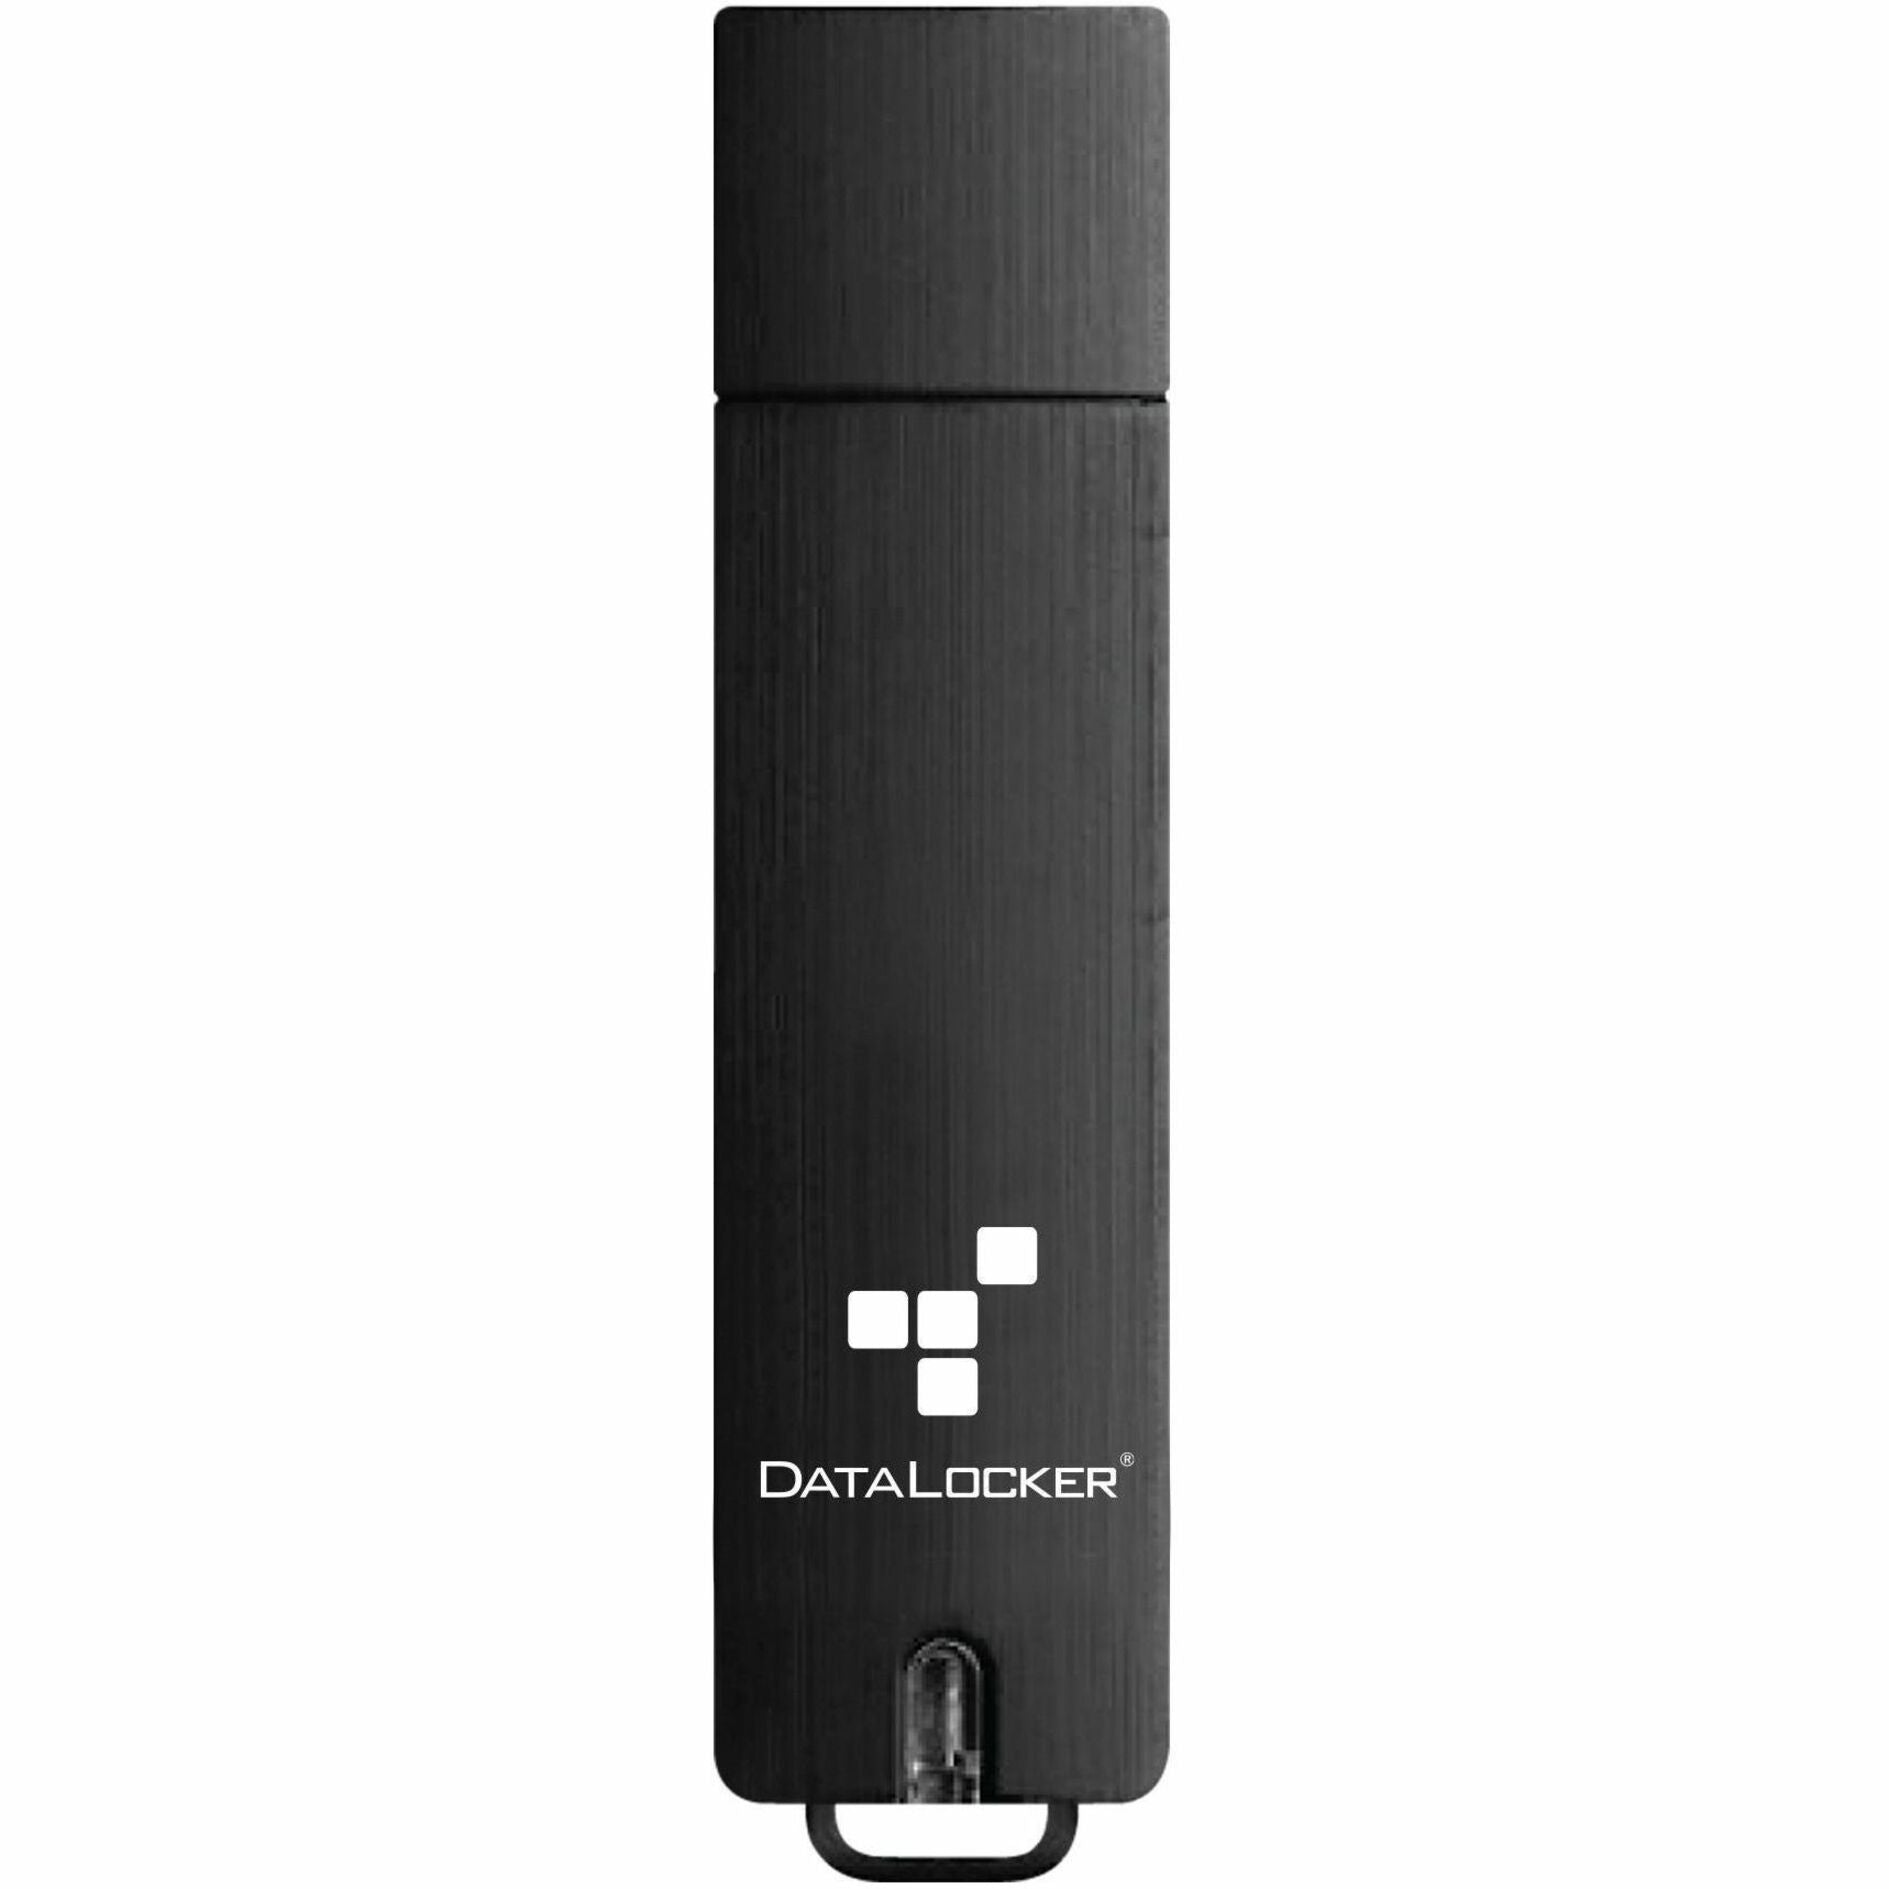 DataLocker S5-008-FE-M Sentry 5 8GB USB 3.2 (Gen 1) Type A Flash Drive Portable Secure Storage Solution  データロッカー S5-008-FE-M セントリー 5 8GB USB 3.2 （Gen 1） タイプA フラッシュドライブ、ポータブルなセキュアストレージソリューション  ブランド名： データロッカー (DataLocker)